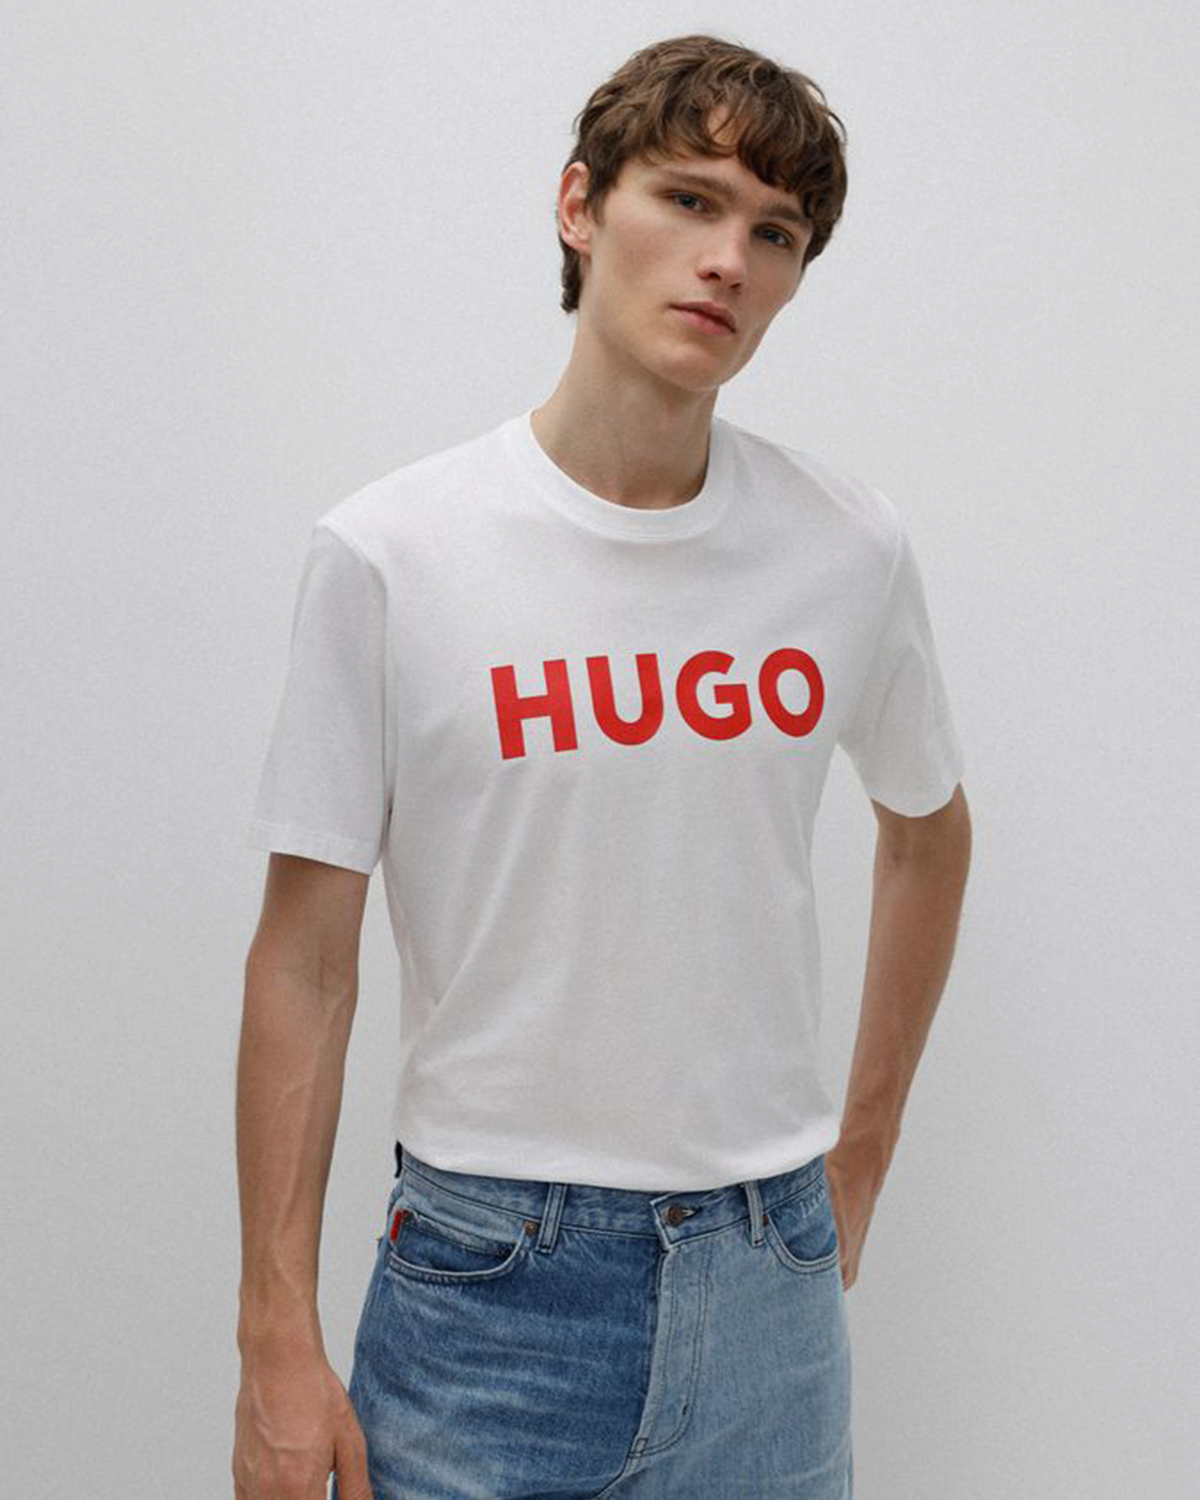 Купить футболку hugo. Футболка Hugo Dulivio. Hugo футболка мужская. Майка мужская Hugo. Белая футболка Хуго.